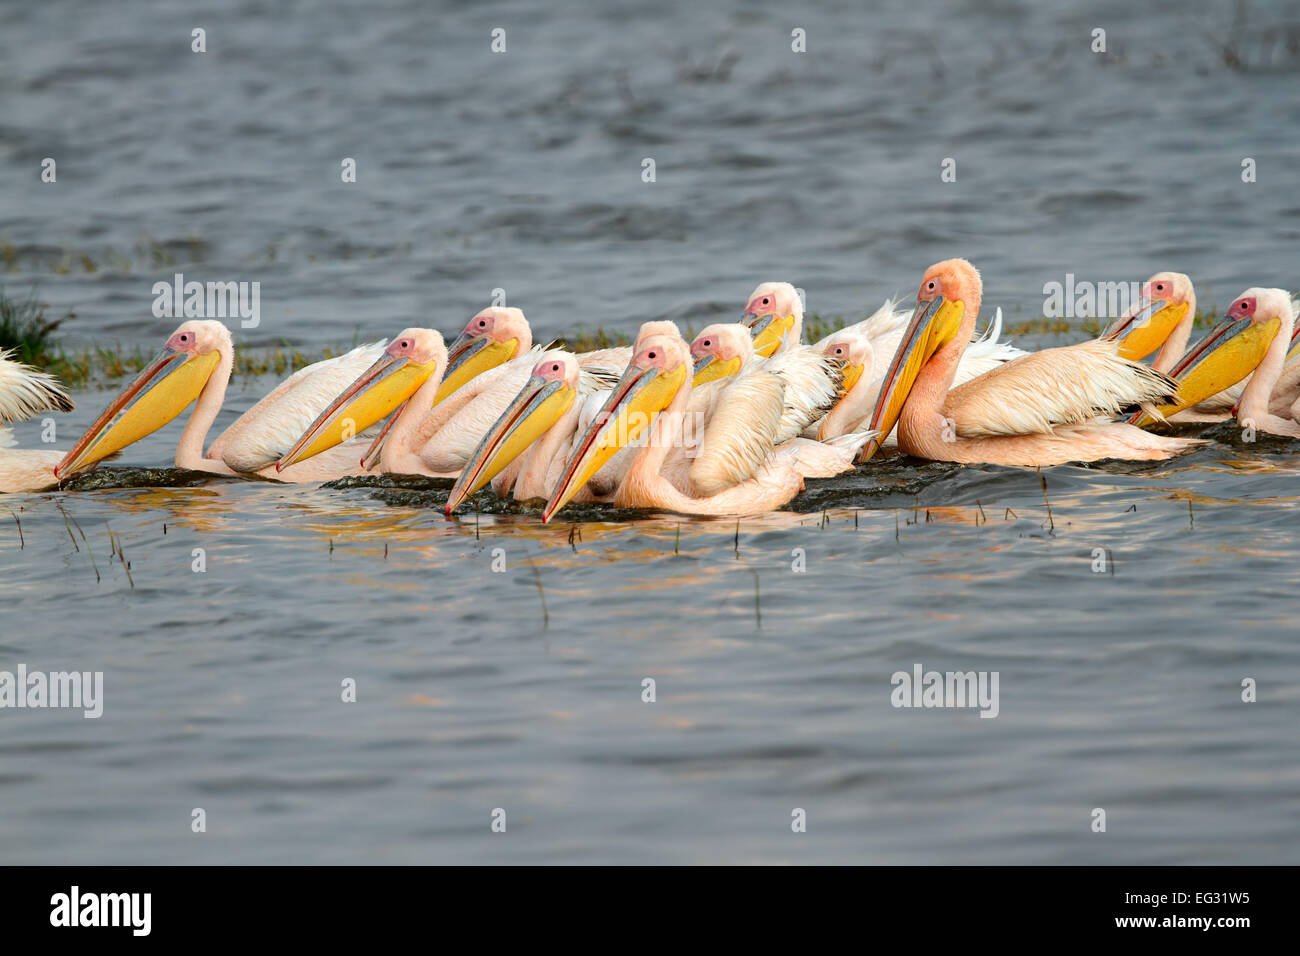 Great white pelicans (Pelecanus onocrotalus) swimming, Lake Nakuru National Park, Kenya Stock Photo